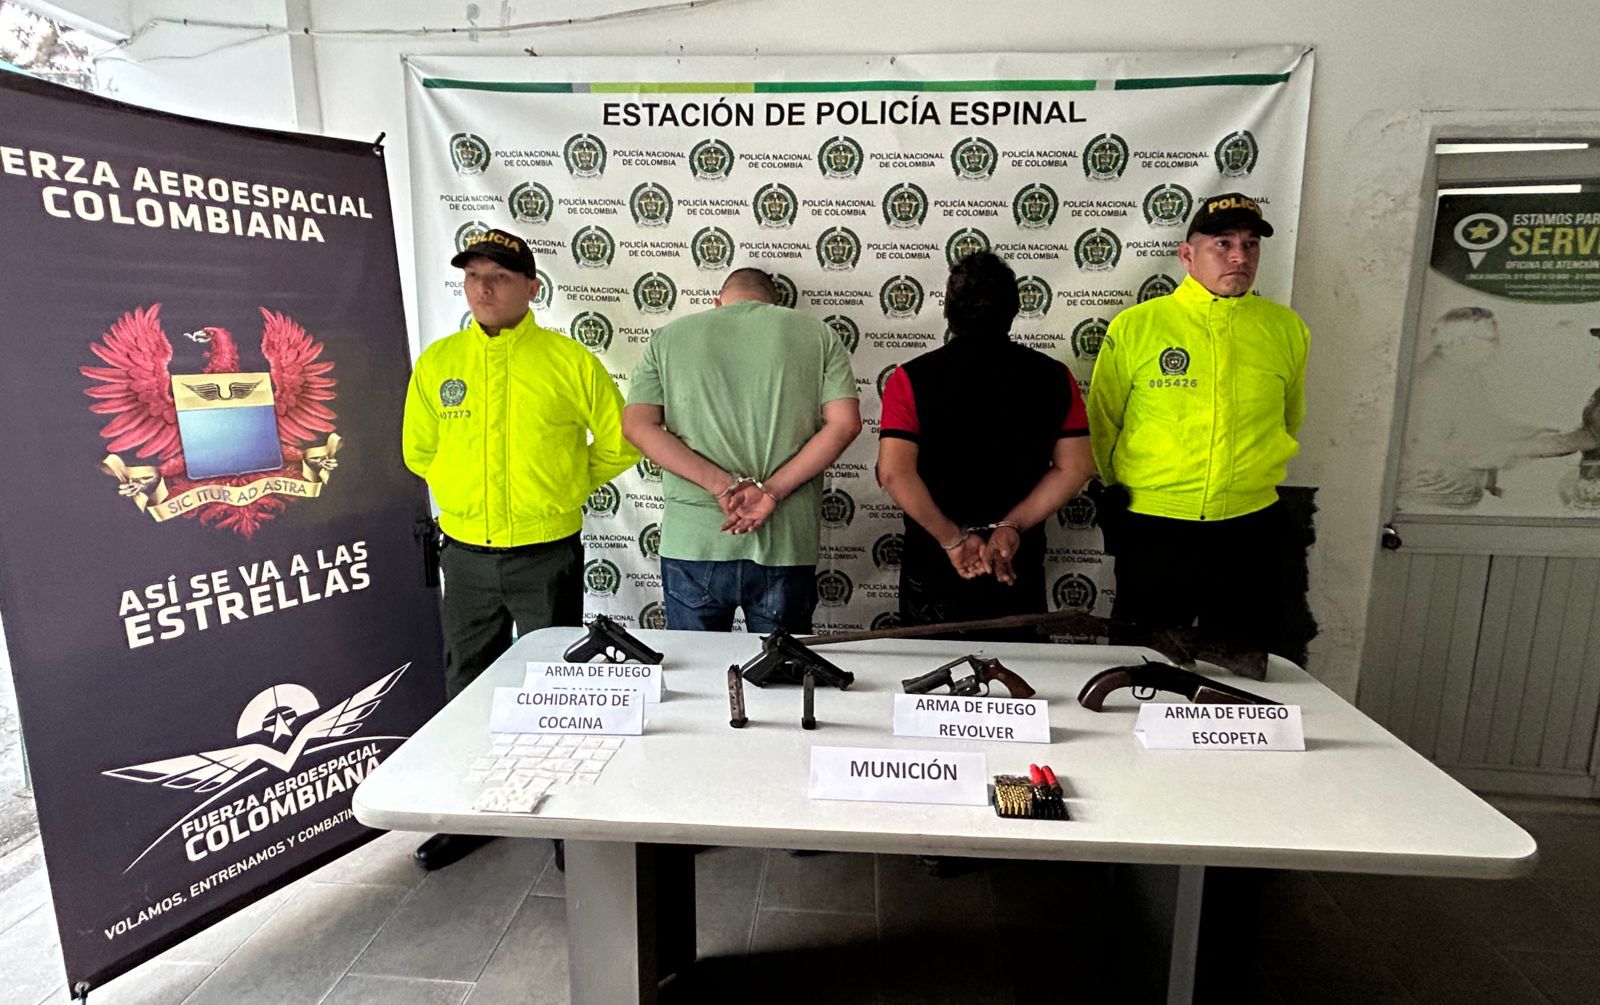 Detenidos alias “pechudo” y alias "Mecánico" en el Espinal, Tolima